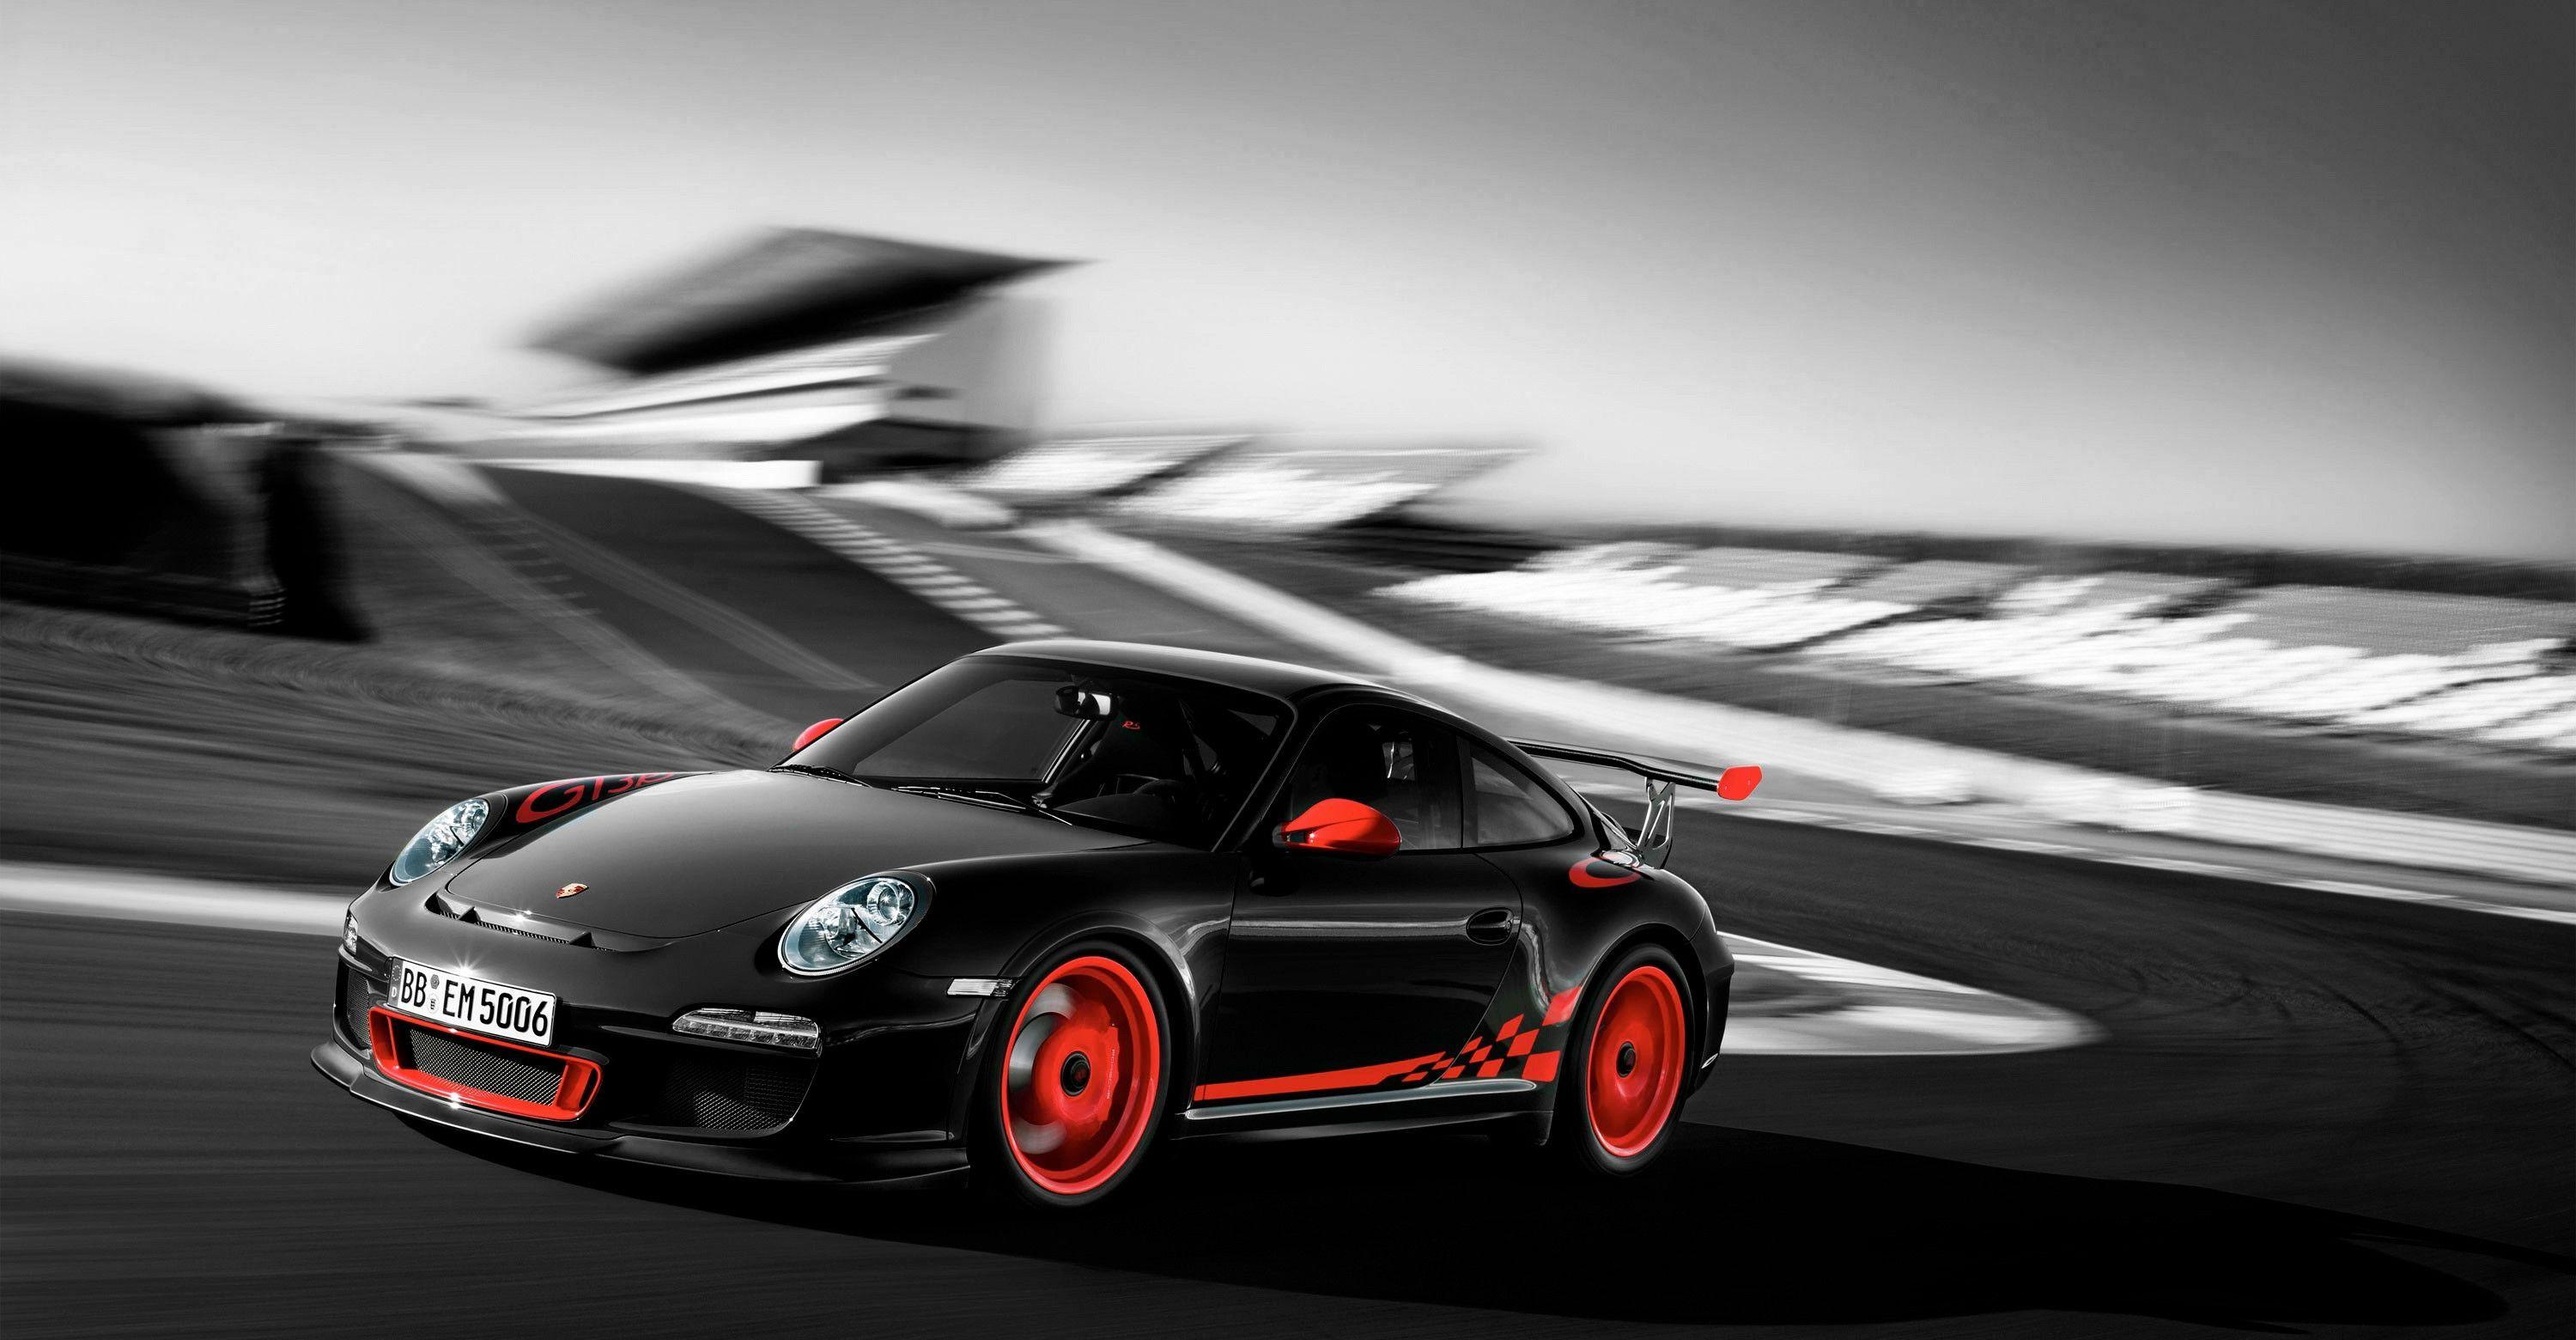 Cool: Porsche Wallpaper. Xv N&; Blogspot